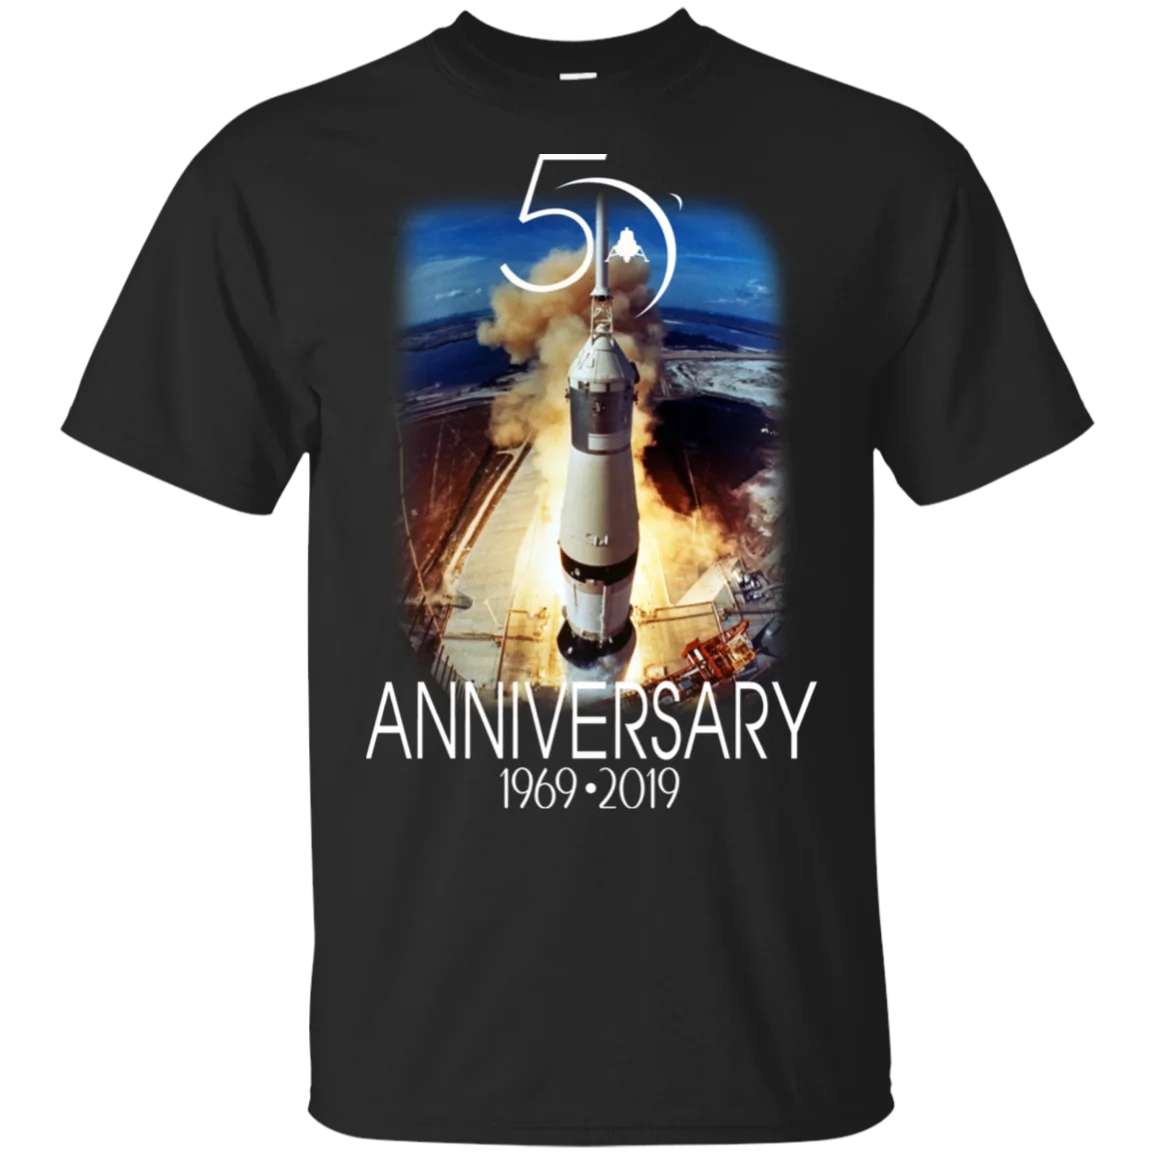 

Футболка Apollo 11, 50-я годовщина, Saturn V Launch, лунная миссия, черная, M-3Xl 2019, Футболки унисекс